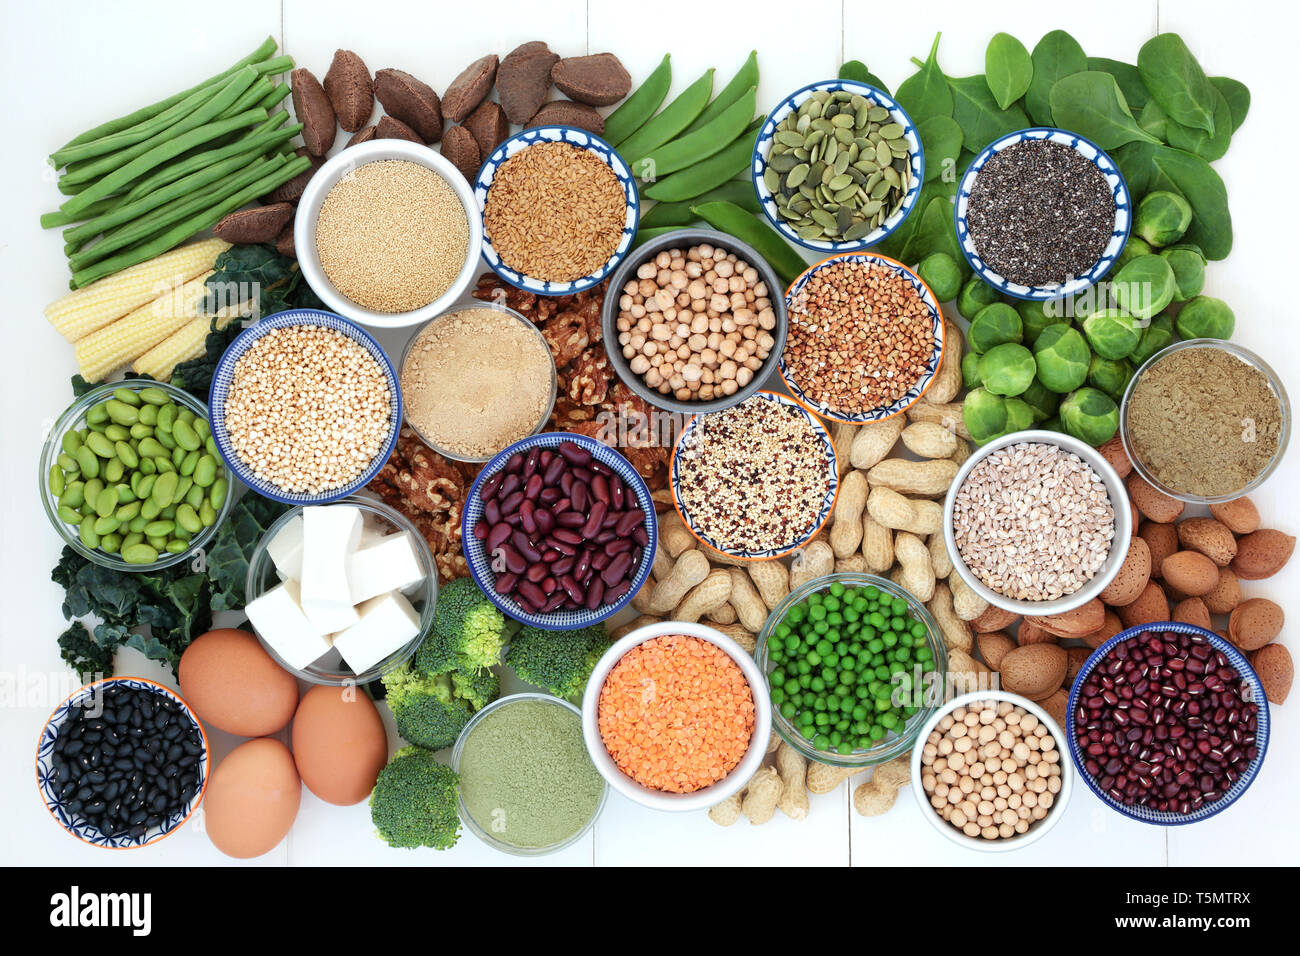 Health Food high in Protein mit Tofu, frisches Gemüse, Hülsenfrüchte, Getreide, Milchprodukte, zu ergänzen, zu Pulver, Samen und Nüsse. Stockfoto